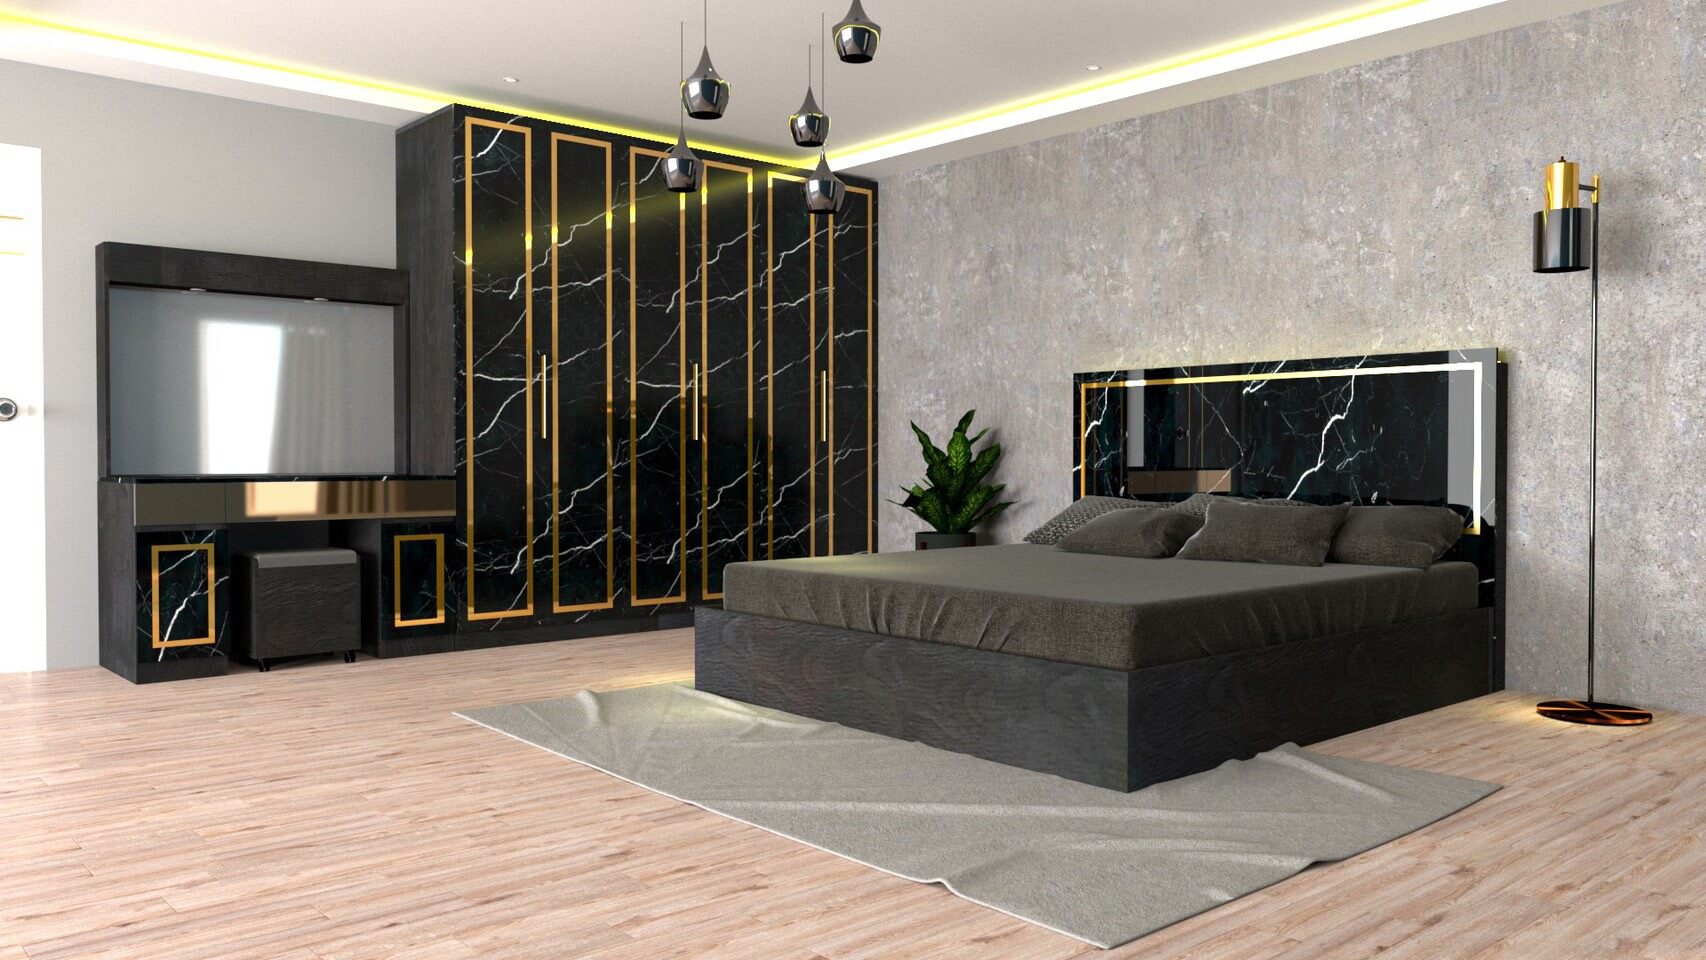 RF Furniture ชุดห้องนอน 5ฟุต รุ่น Jessica A บานทึบ ( เตียง 5ฟุต +ตู้หัวเตียง 2ข้าง+โต๊ะแป้ง 120 ซม.+ตู้เสื้อผ้า 2.40ม. ) Bedroom Set สี AG/DM/GL